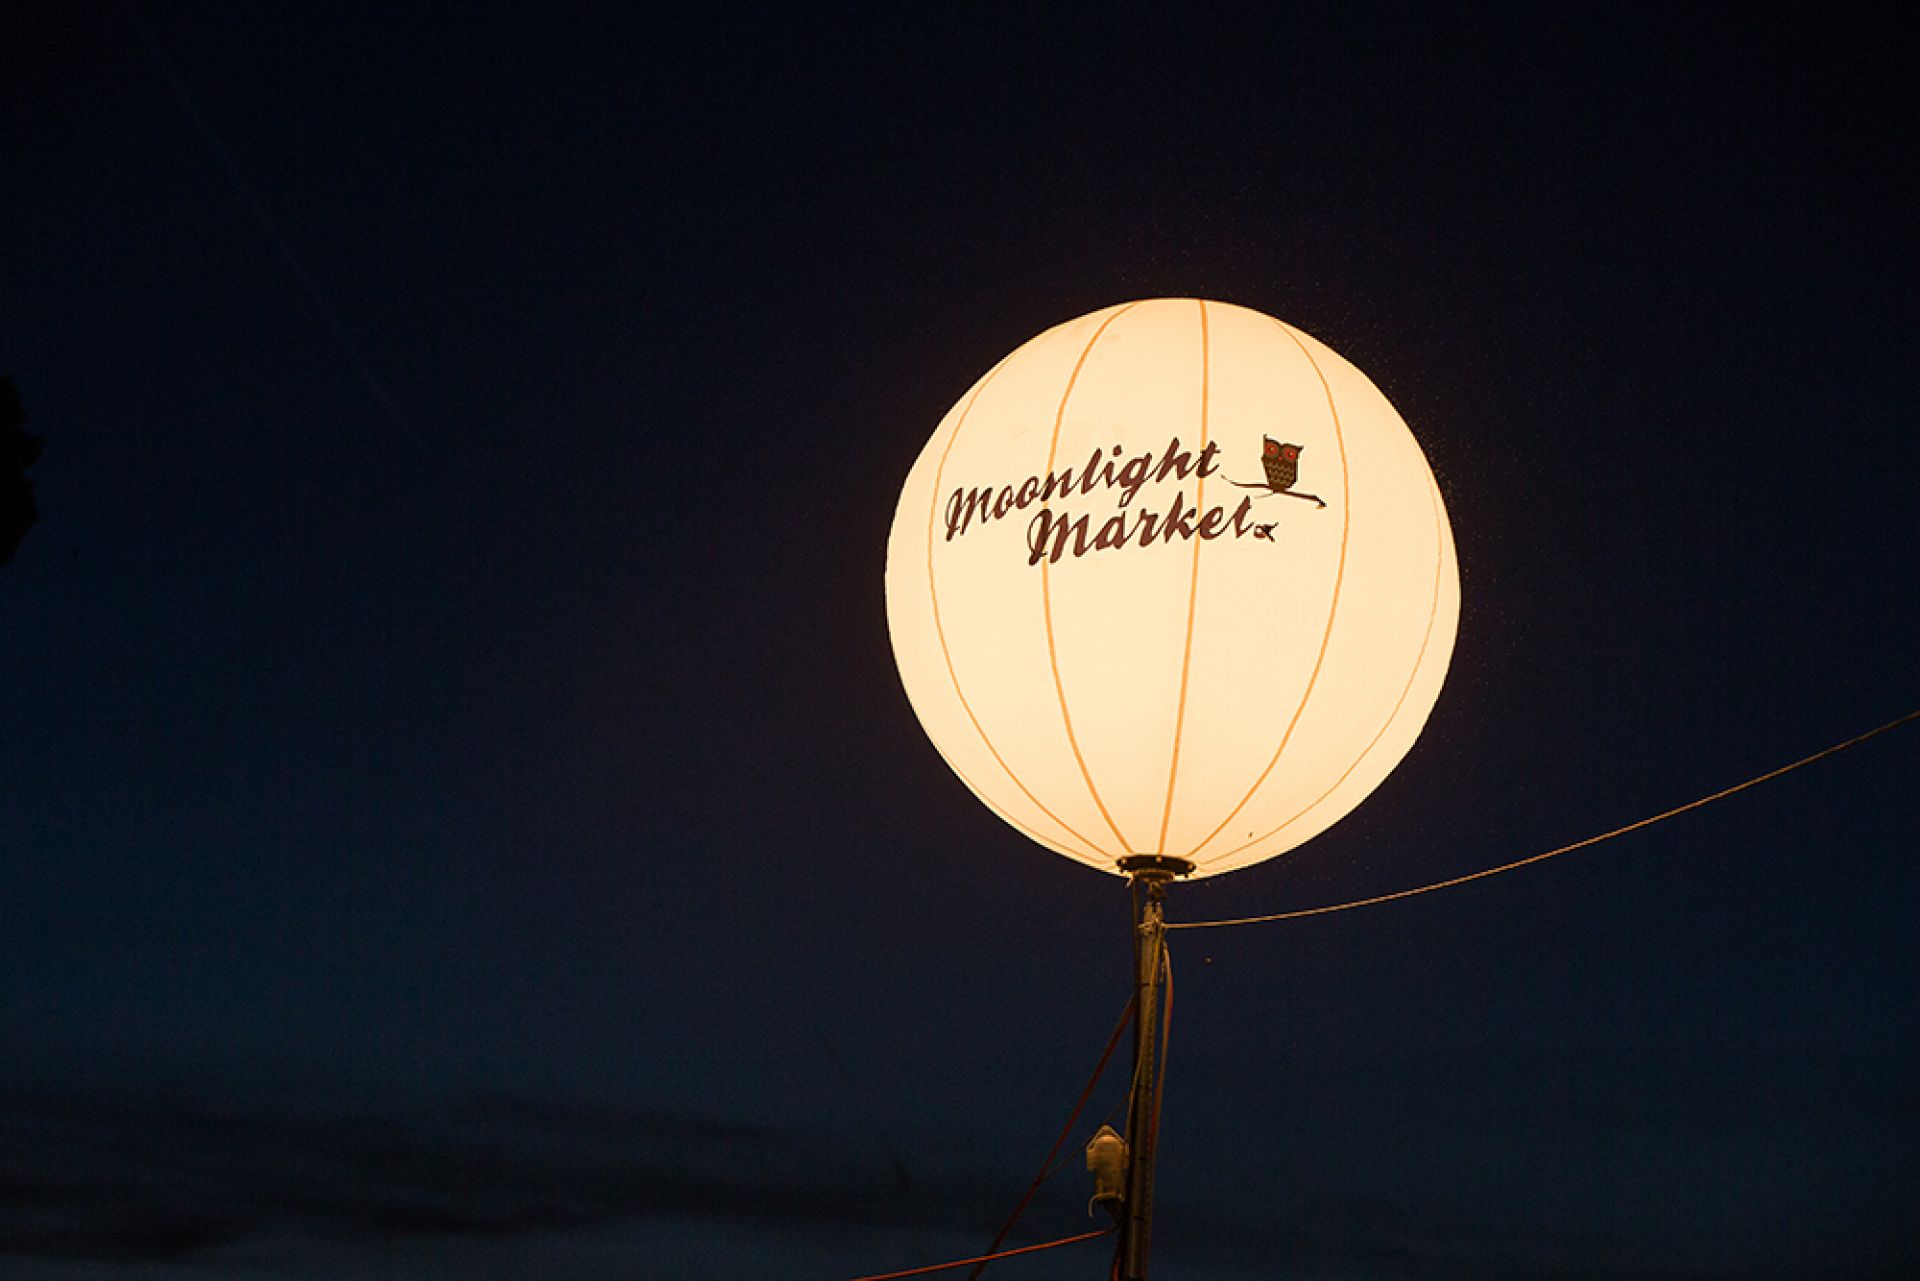 Moonlight Markets - Moon Balloon